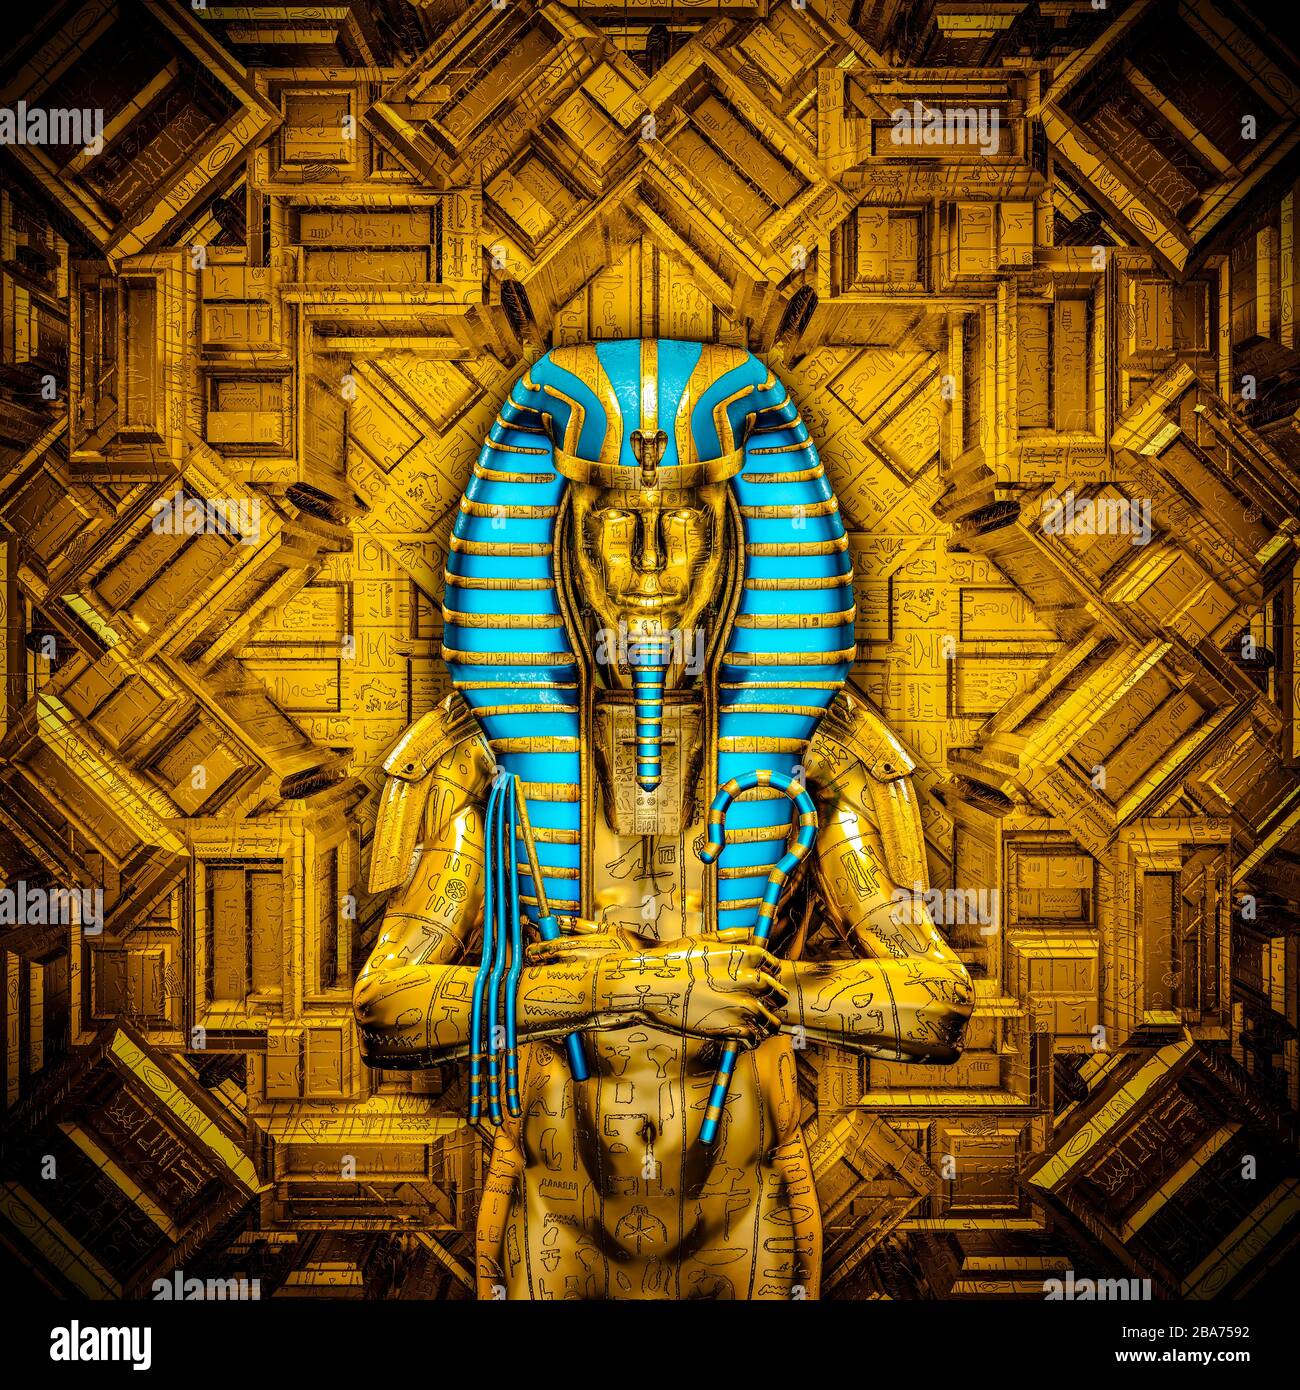 Il re sacro / illustrazione 3D del faraone egiziano maschio futuristico dorato coperto da simboli geroglifici all'interno del tempio d'oro Foto Stock